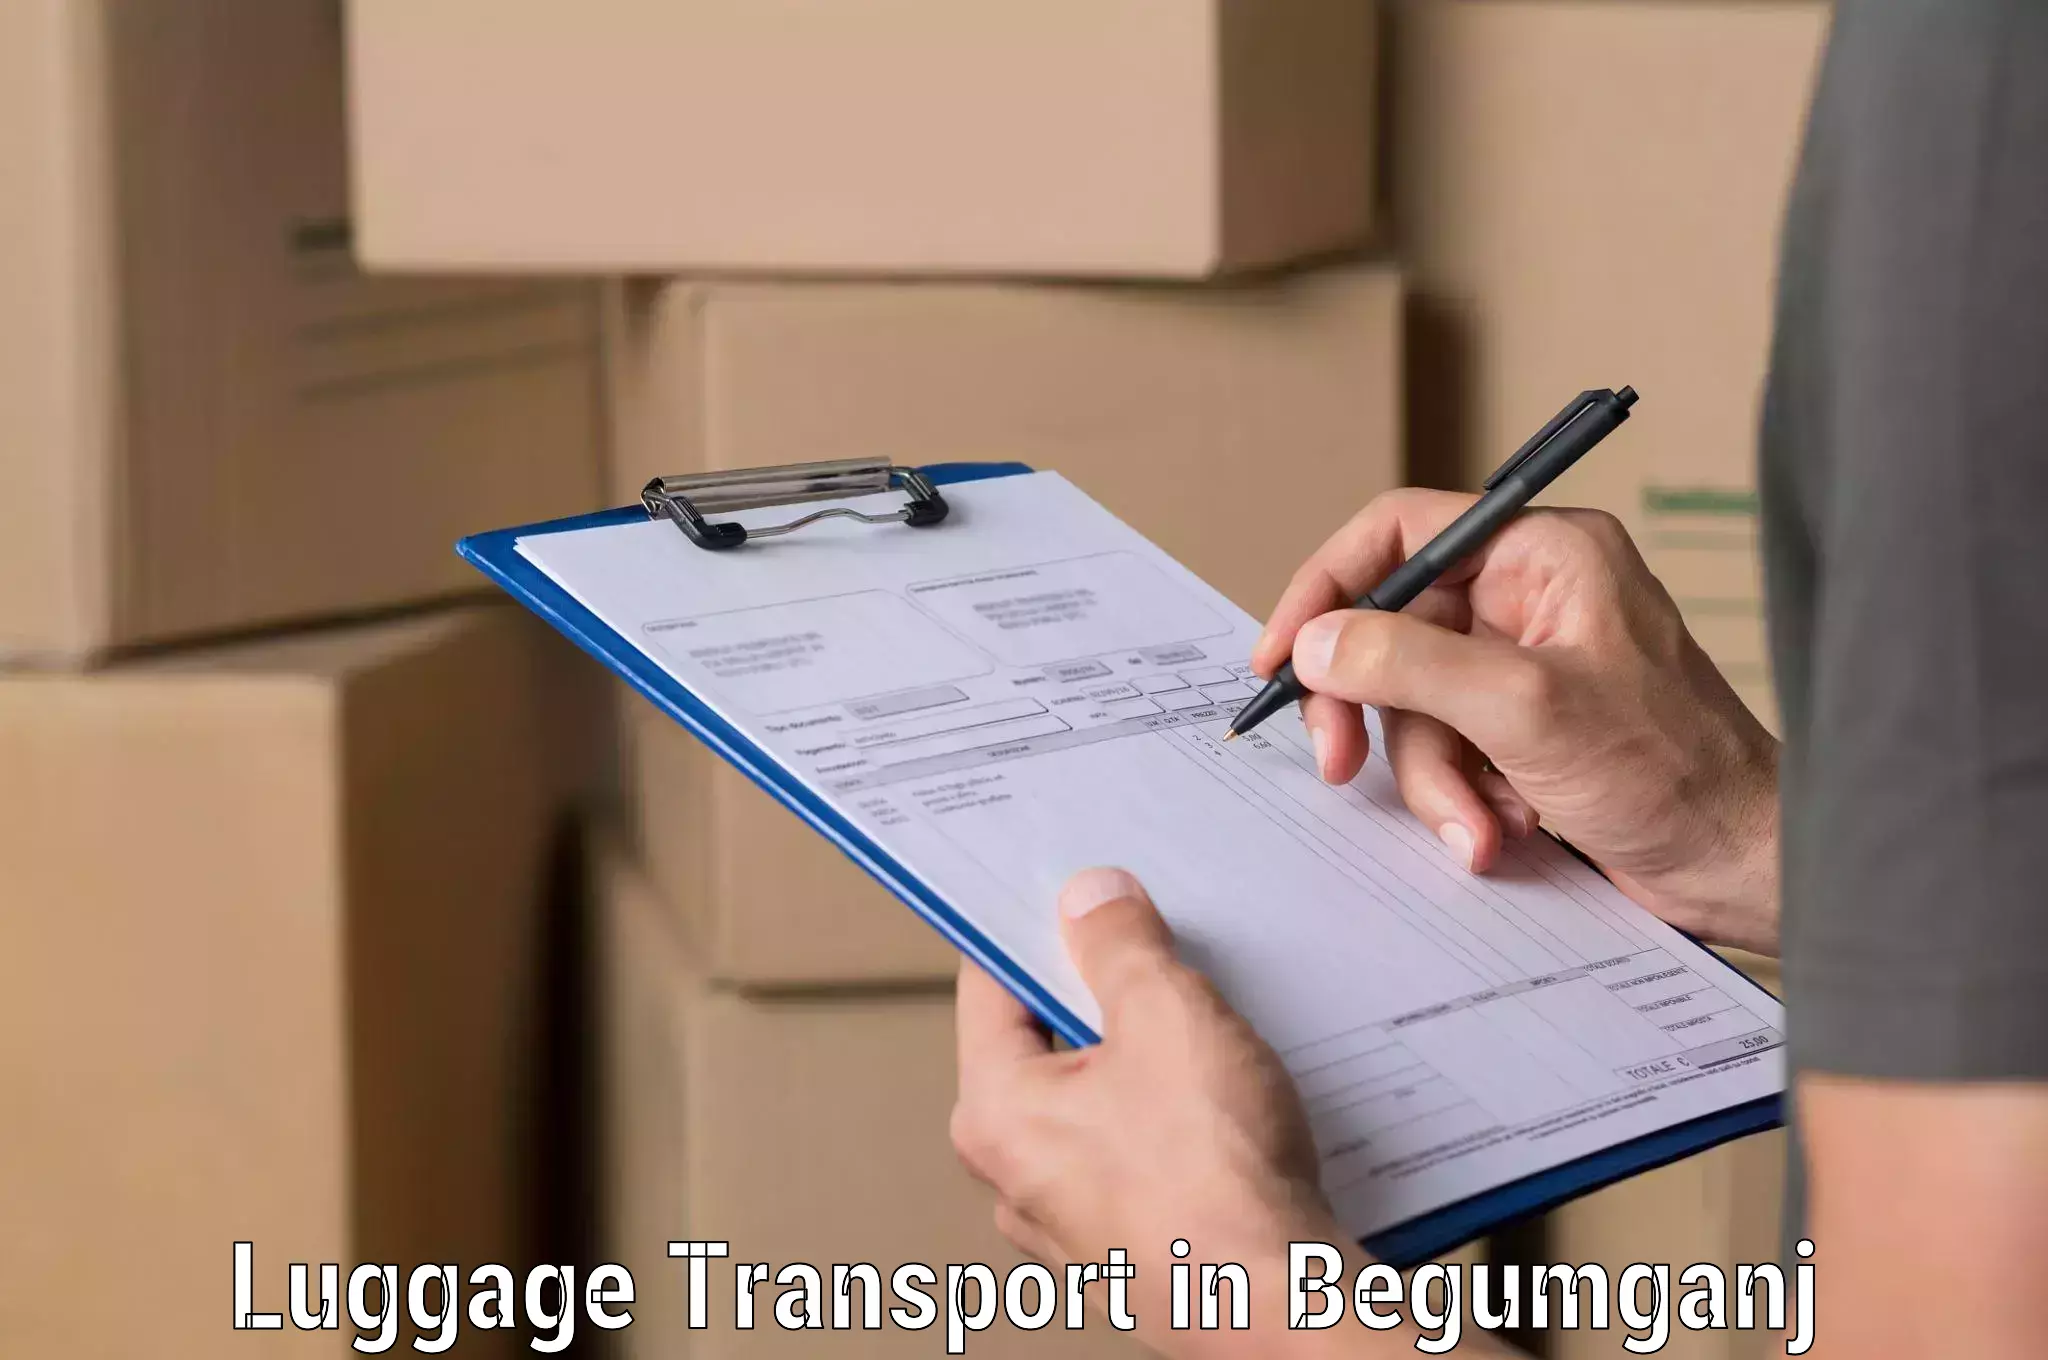 Efficient luggage delivery in Begumganj